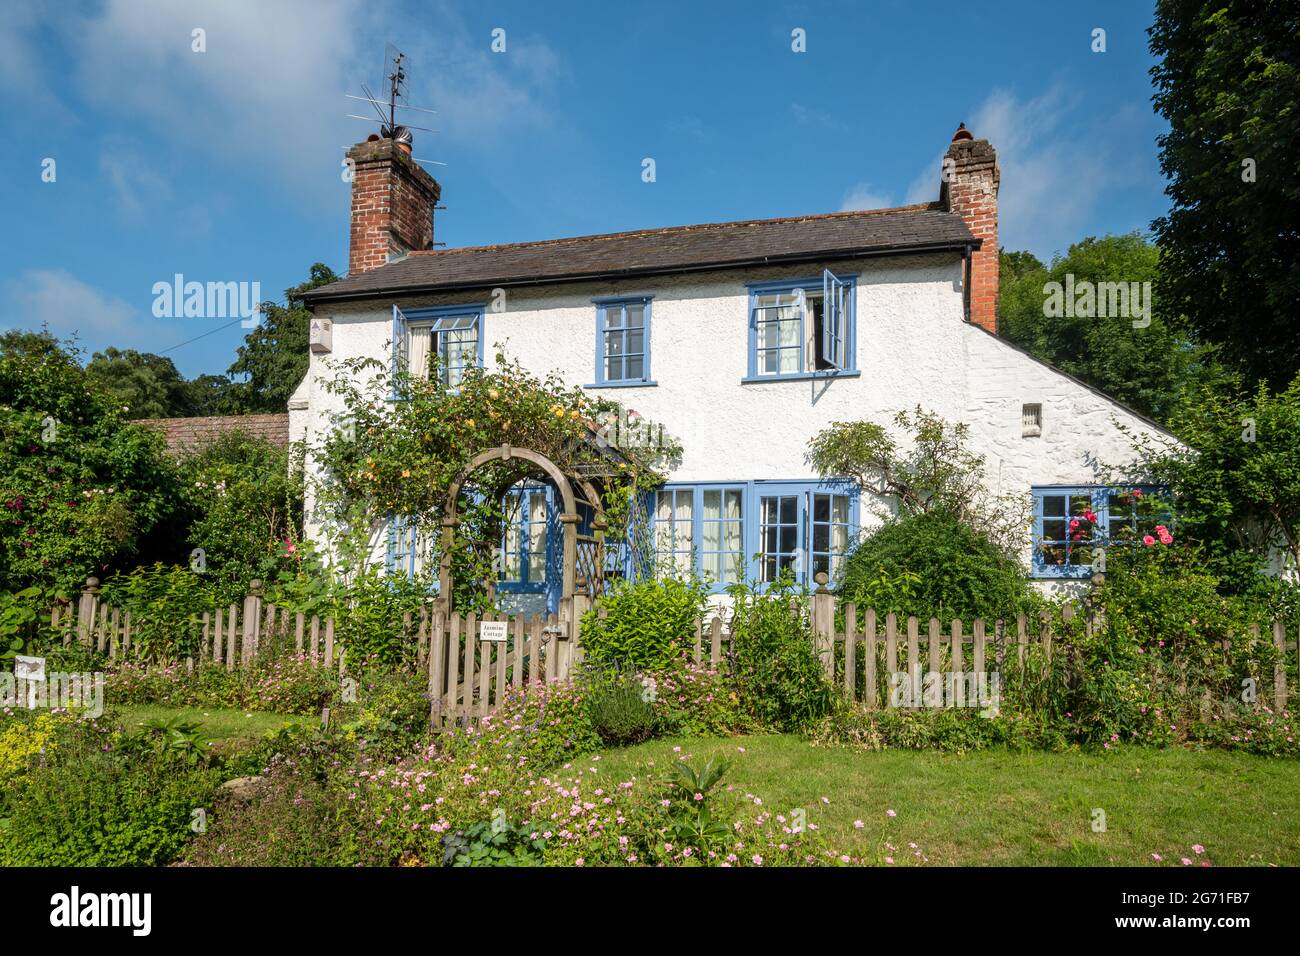 Grazioso cottage e giardino a Peaslake, un villaggio nel Surrey Hills AONB, Inghilterra, Regno Unito Foto Stock